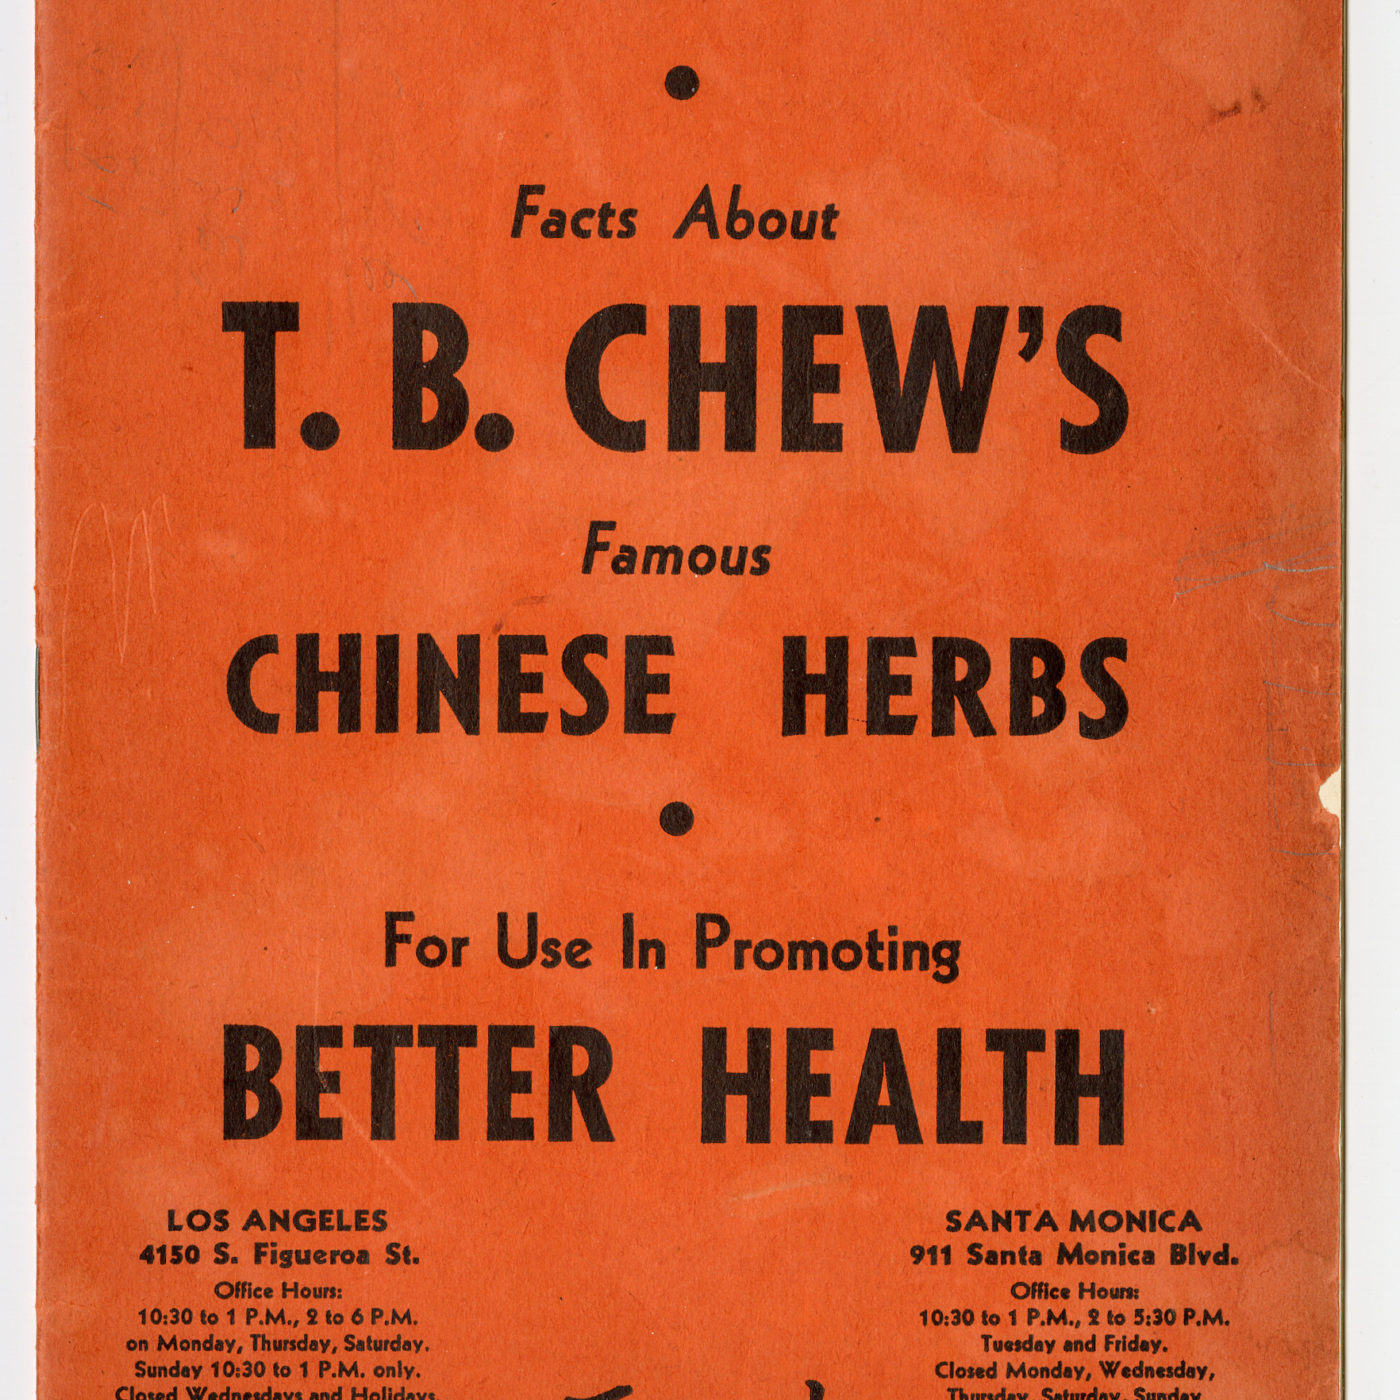 关于T.B. Chew's Famous Chinese Herbs 小册子中的一些事实。由 Roy Delbyck 捐赠，美国华人博物馆 (MOCA) 馆藏。